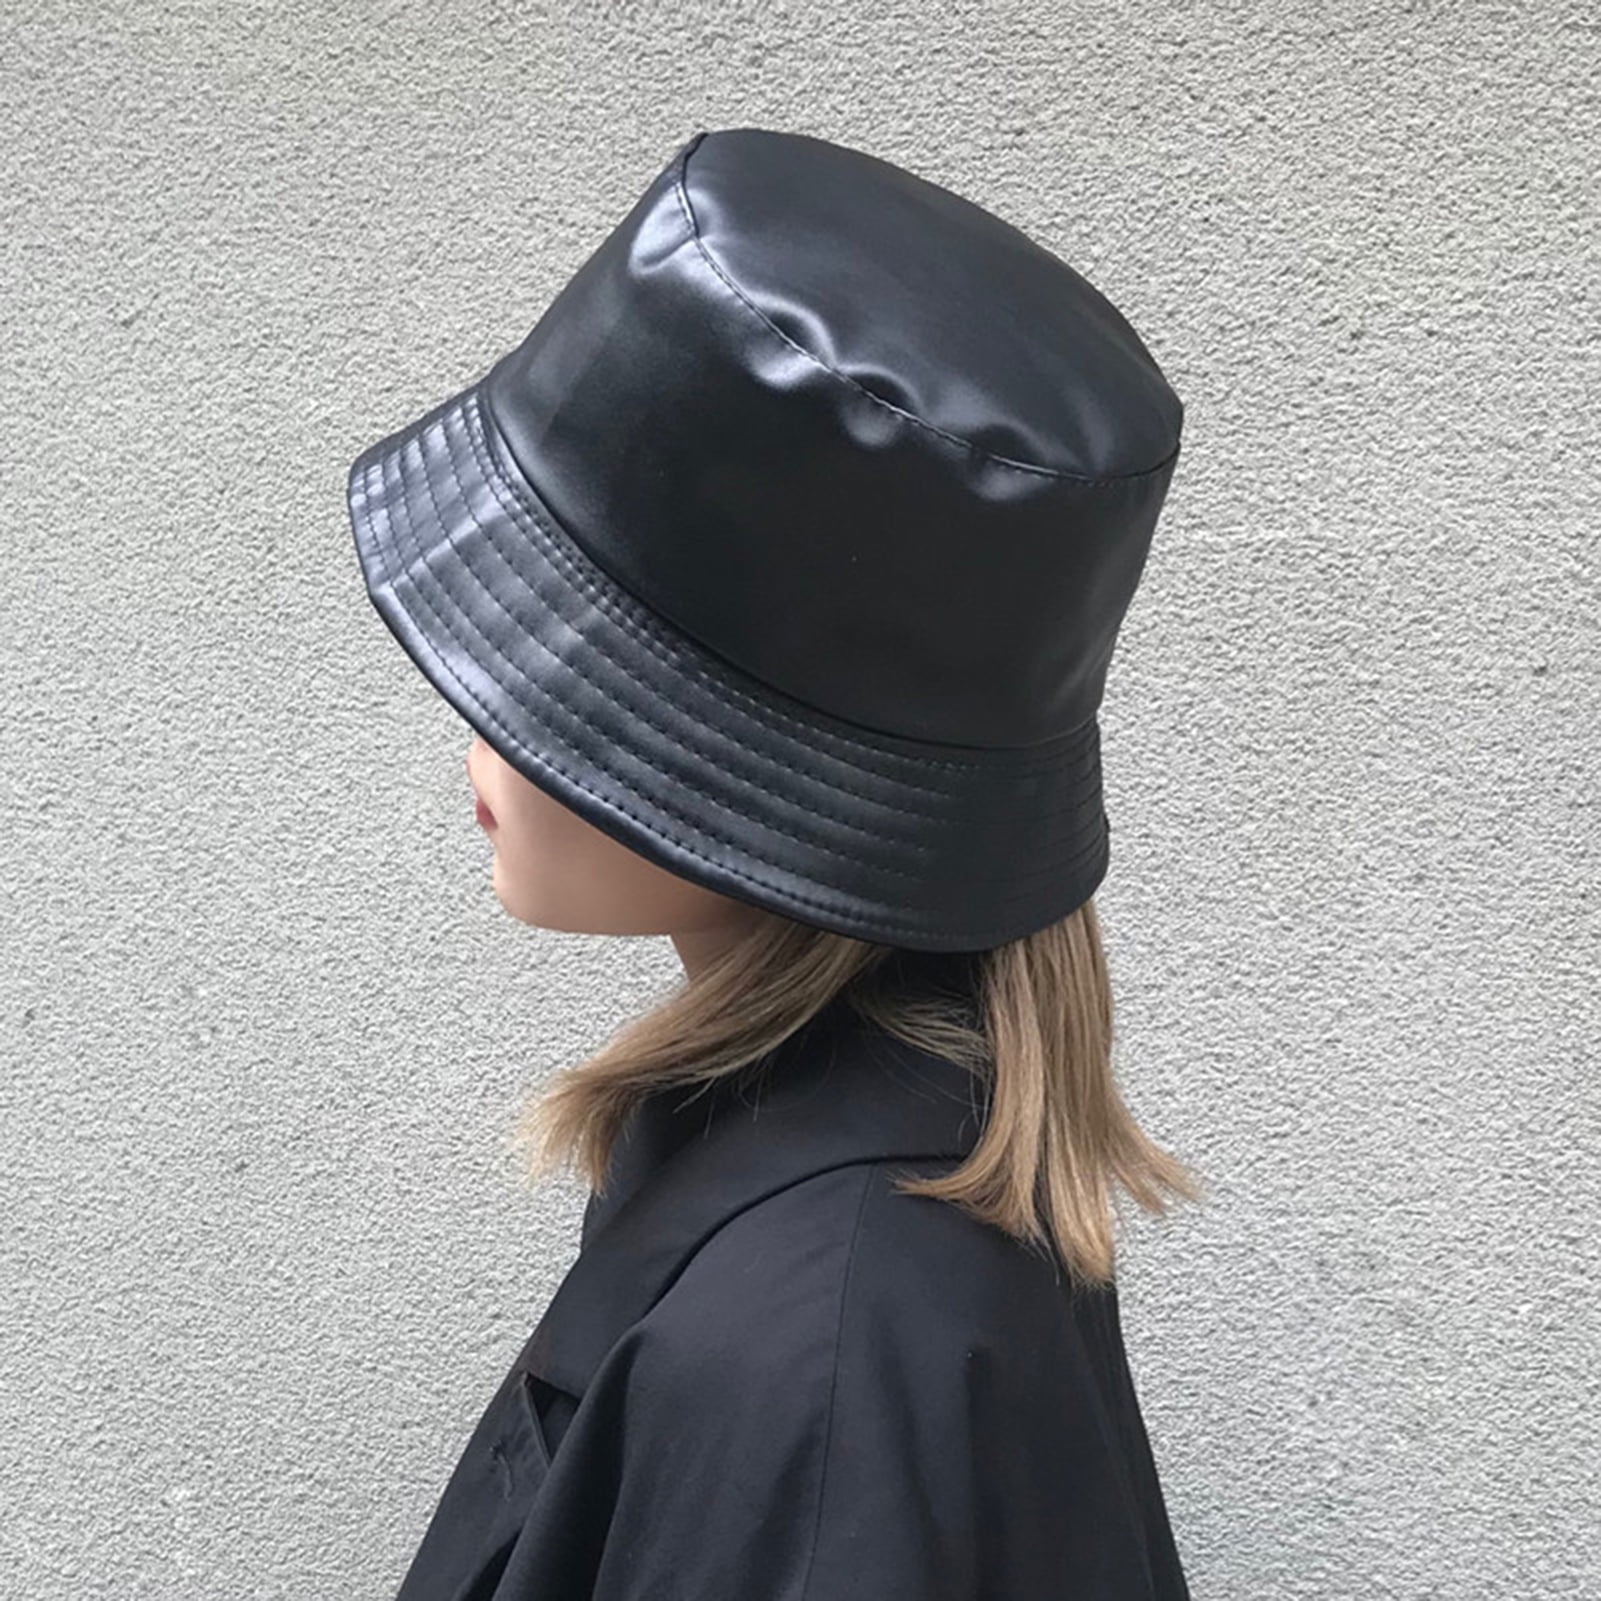 Bueautybox Bucket Hats for Women, Trendy Faux Leather Sun Fishing